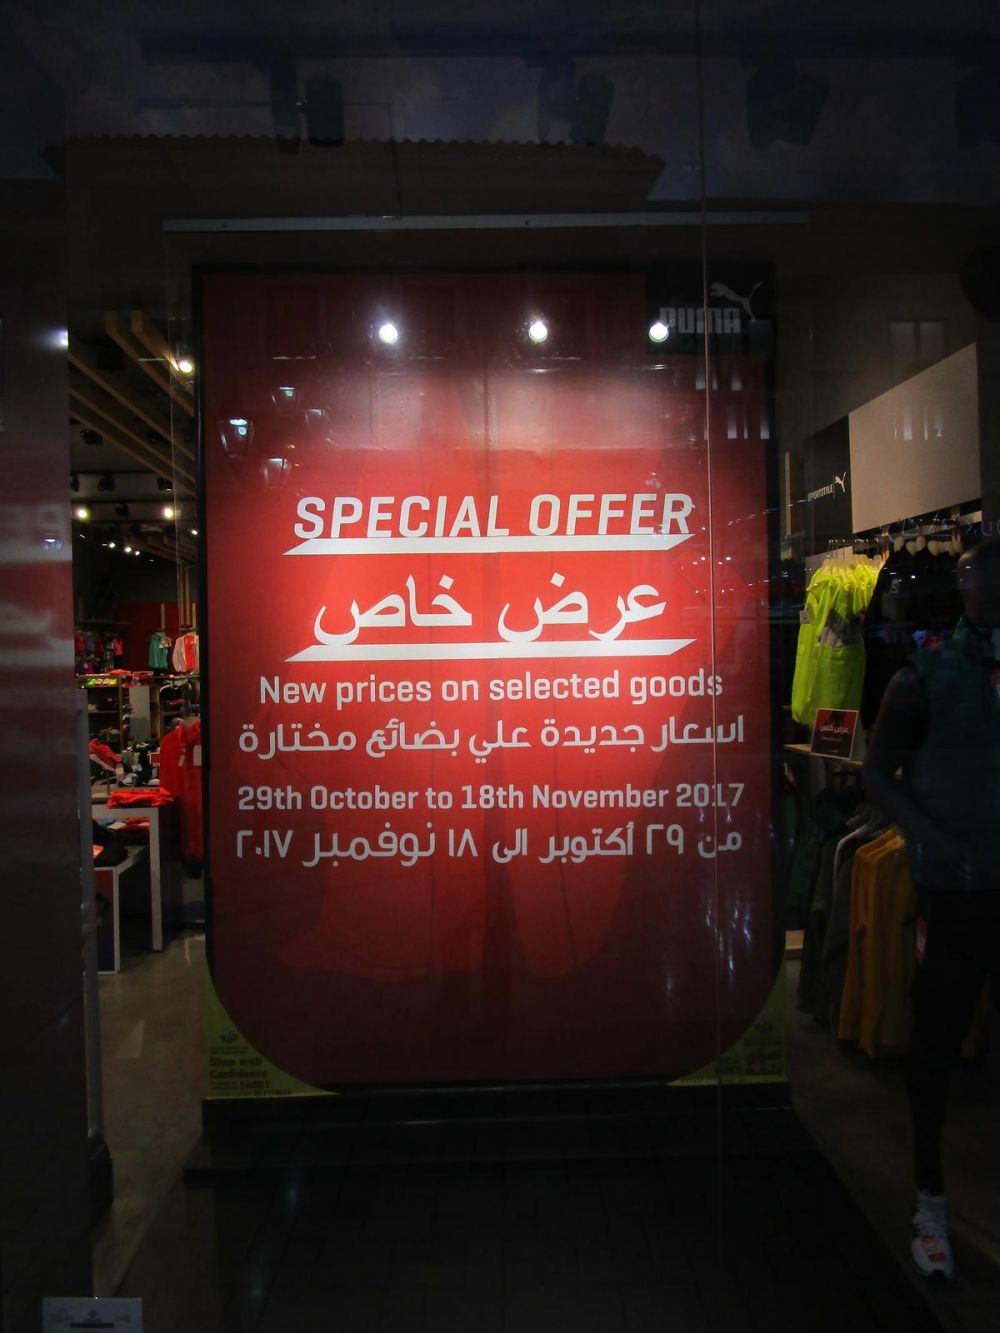 Special Offer - PUMA Qatar